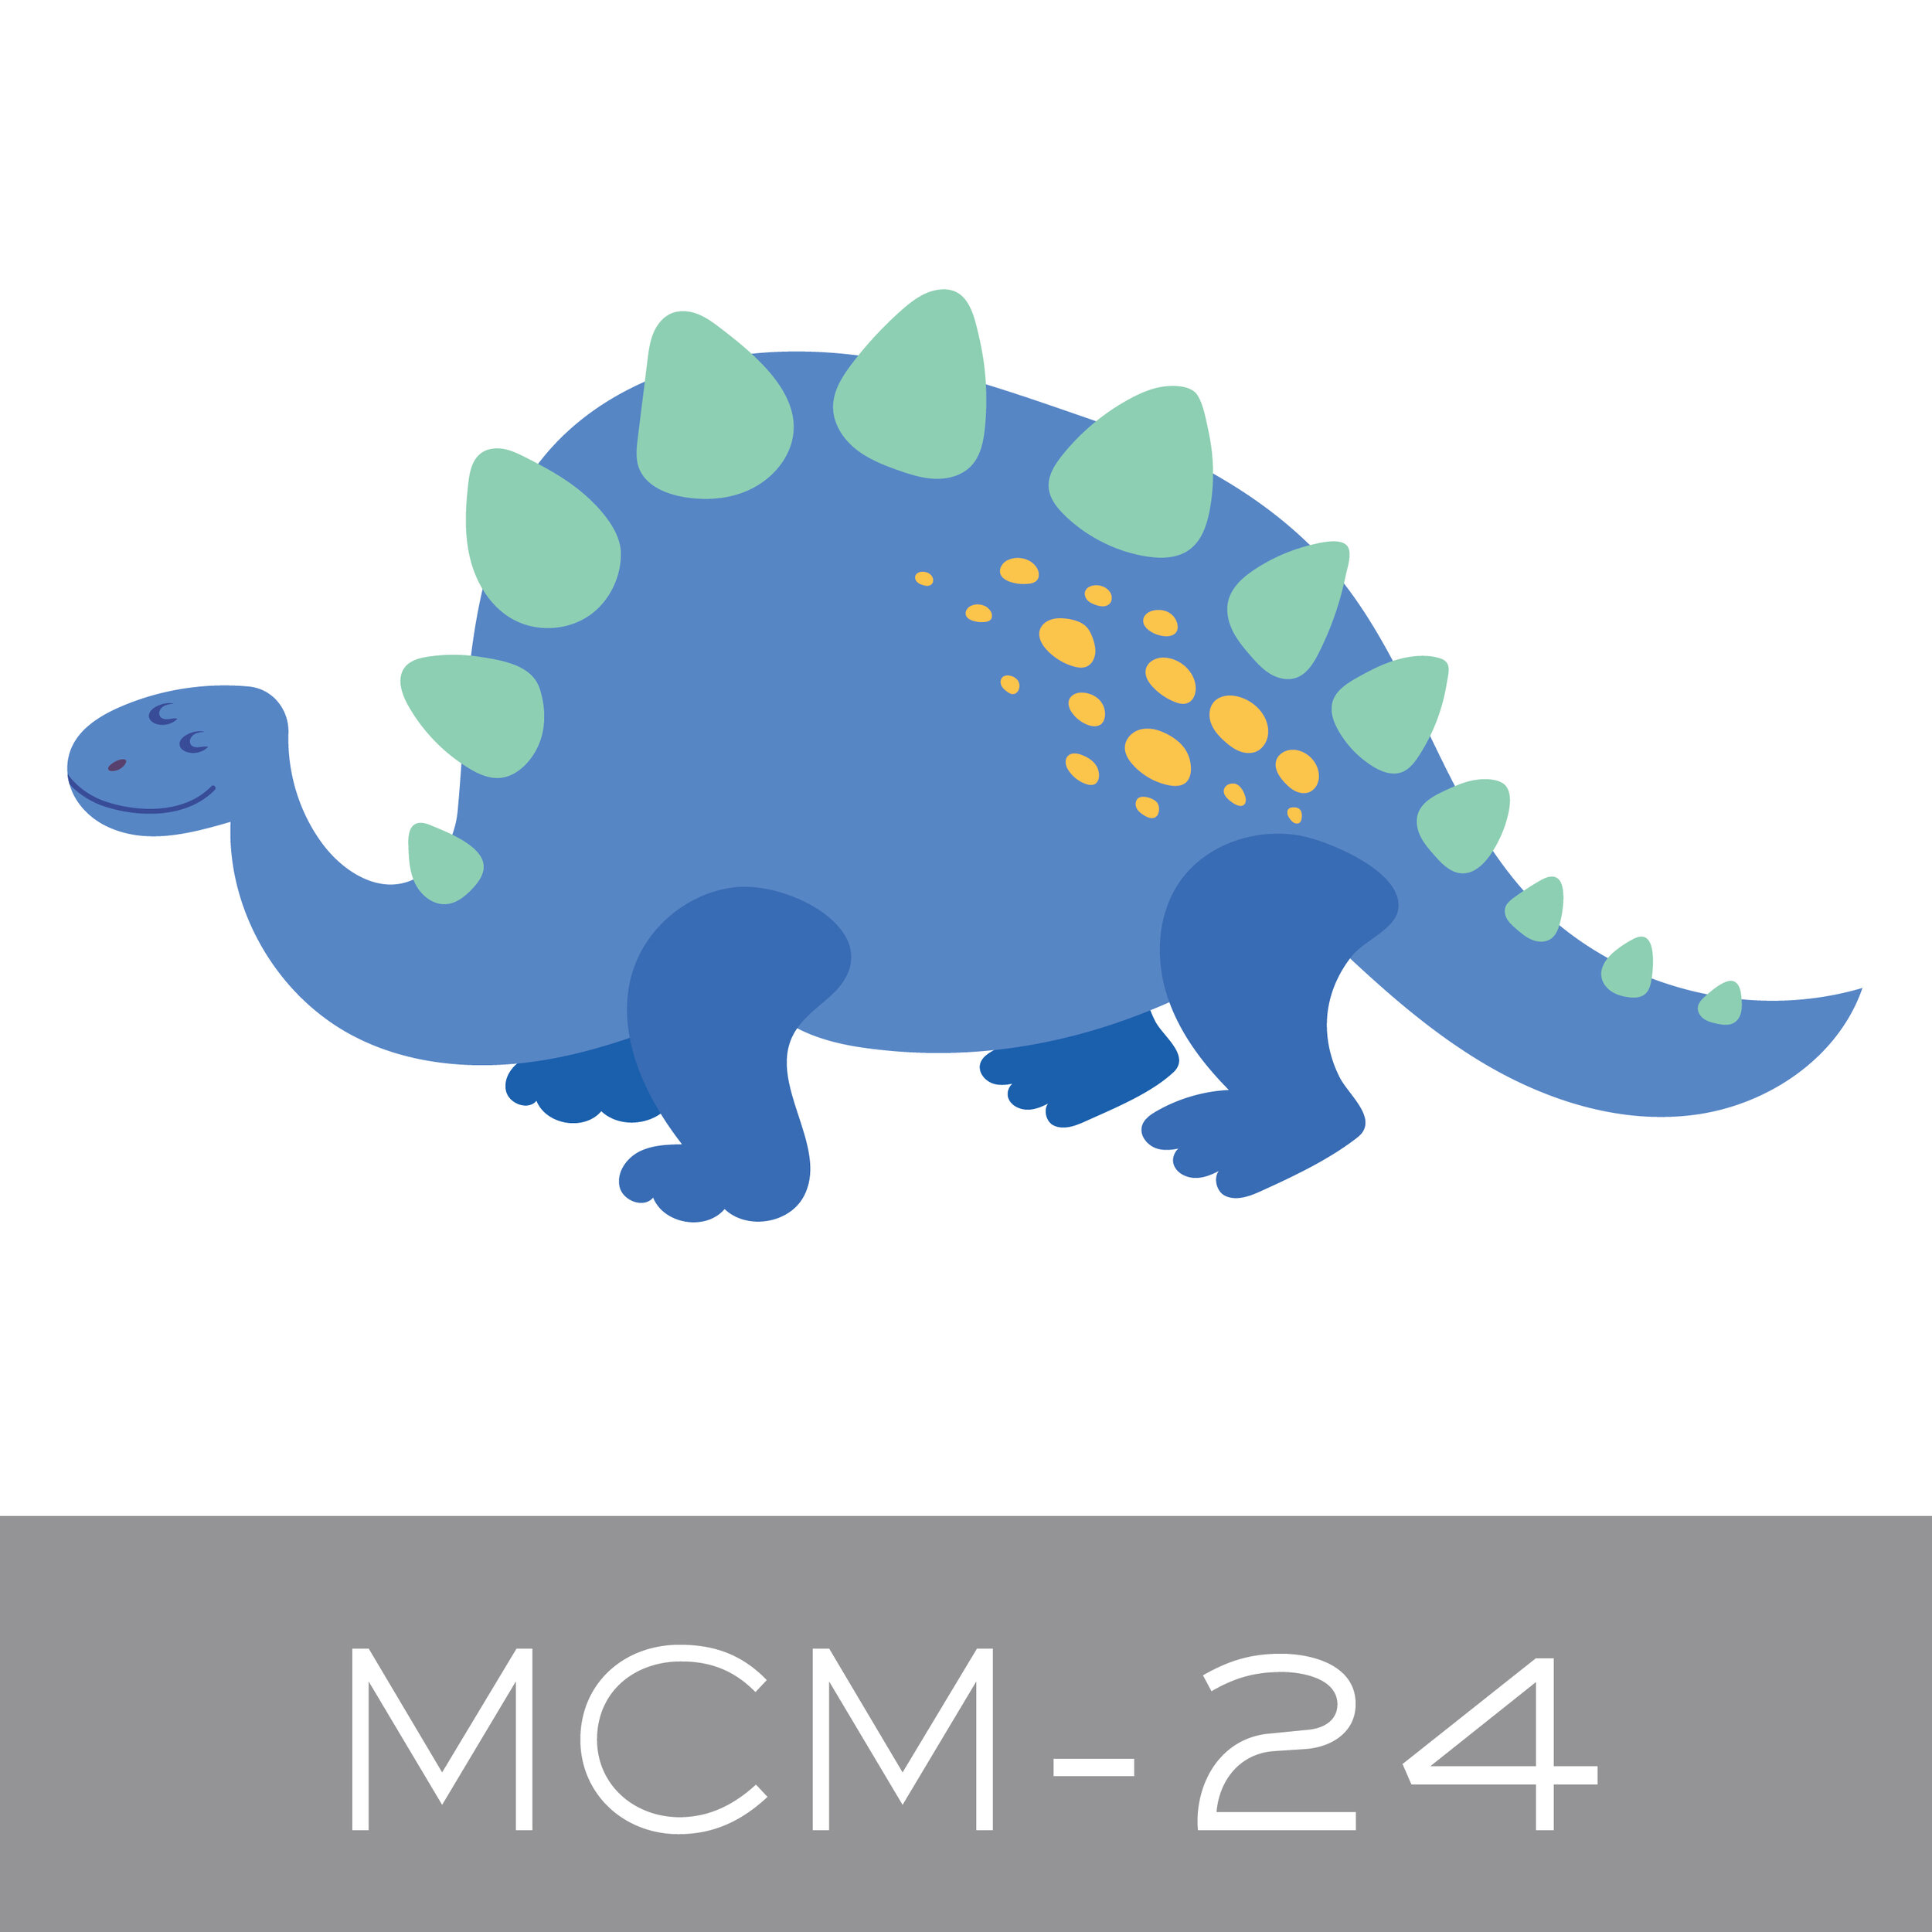 MCM-24.jpg